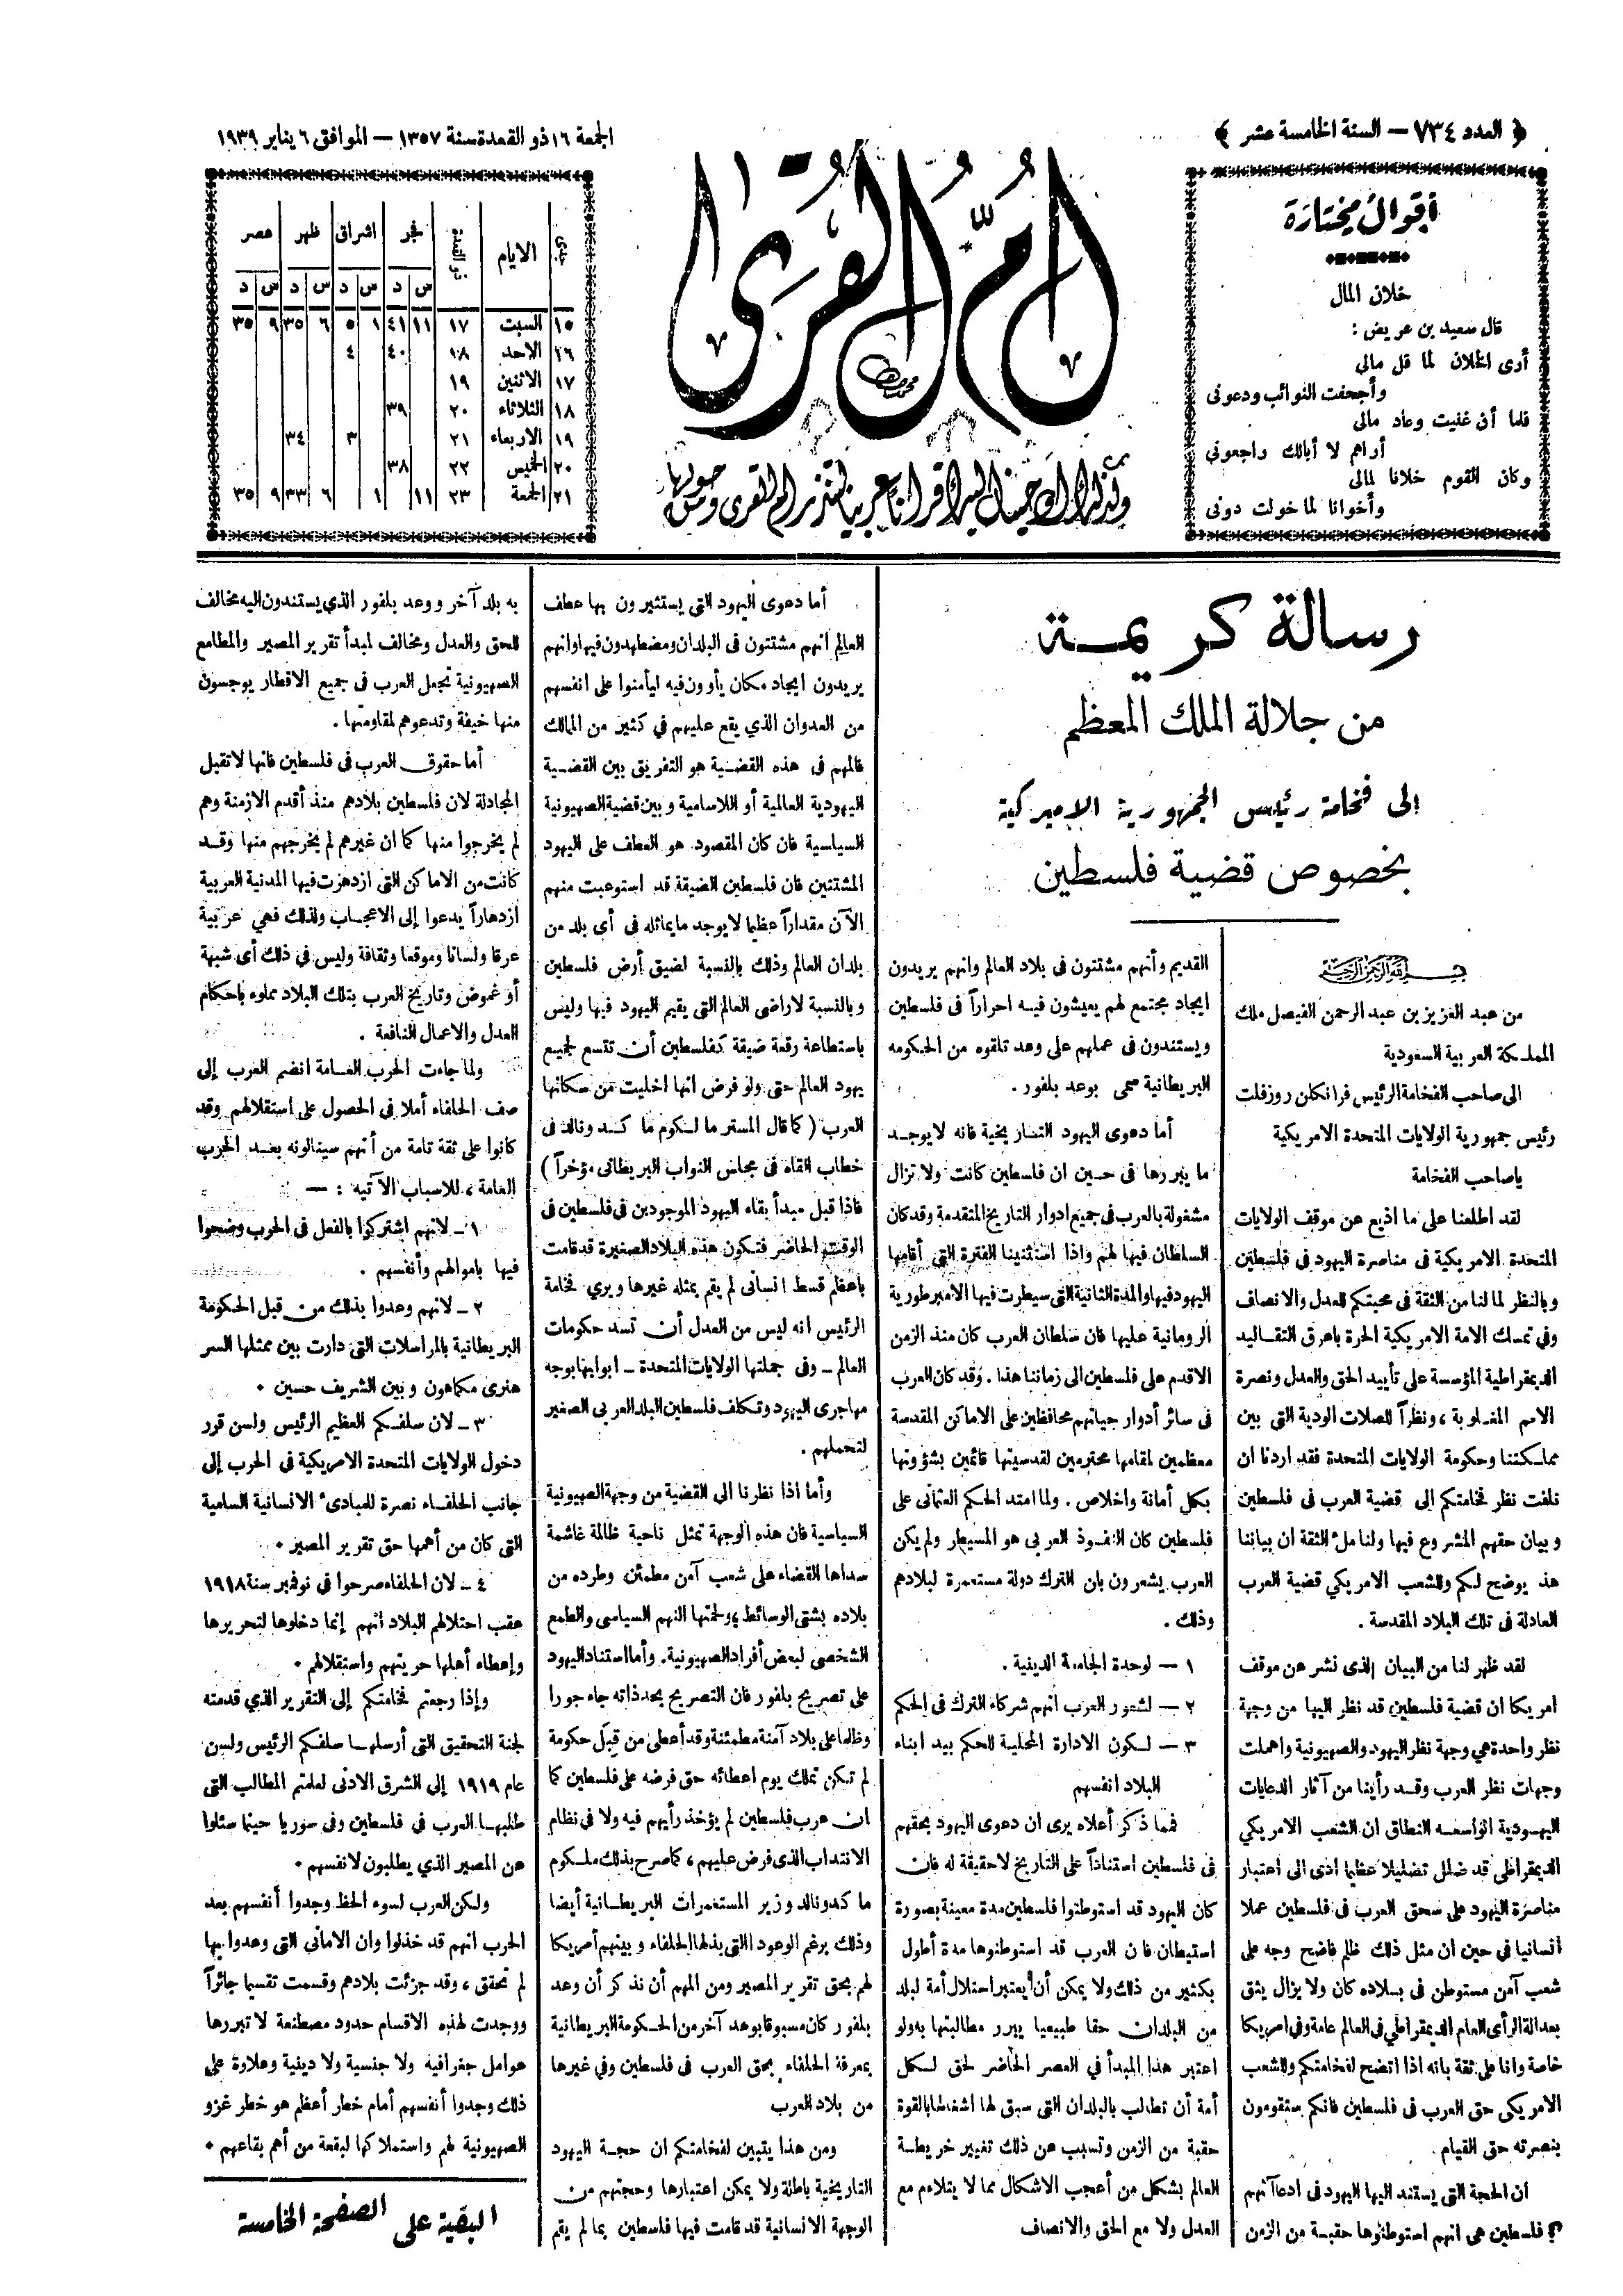 Publié dans le journal mecquois Oumm Al-Qora le vendredi 16 Dhou Al-Qi'dah 1357 correspondant au 6 janvier 1939.